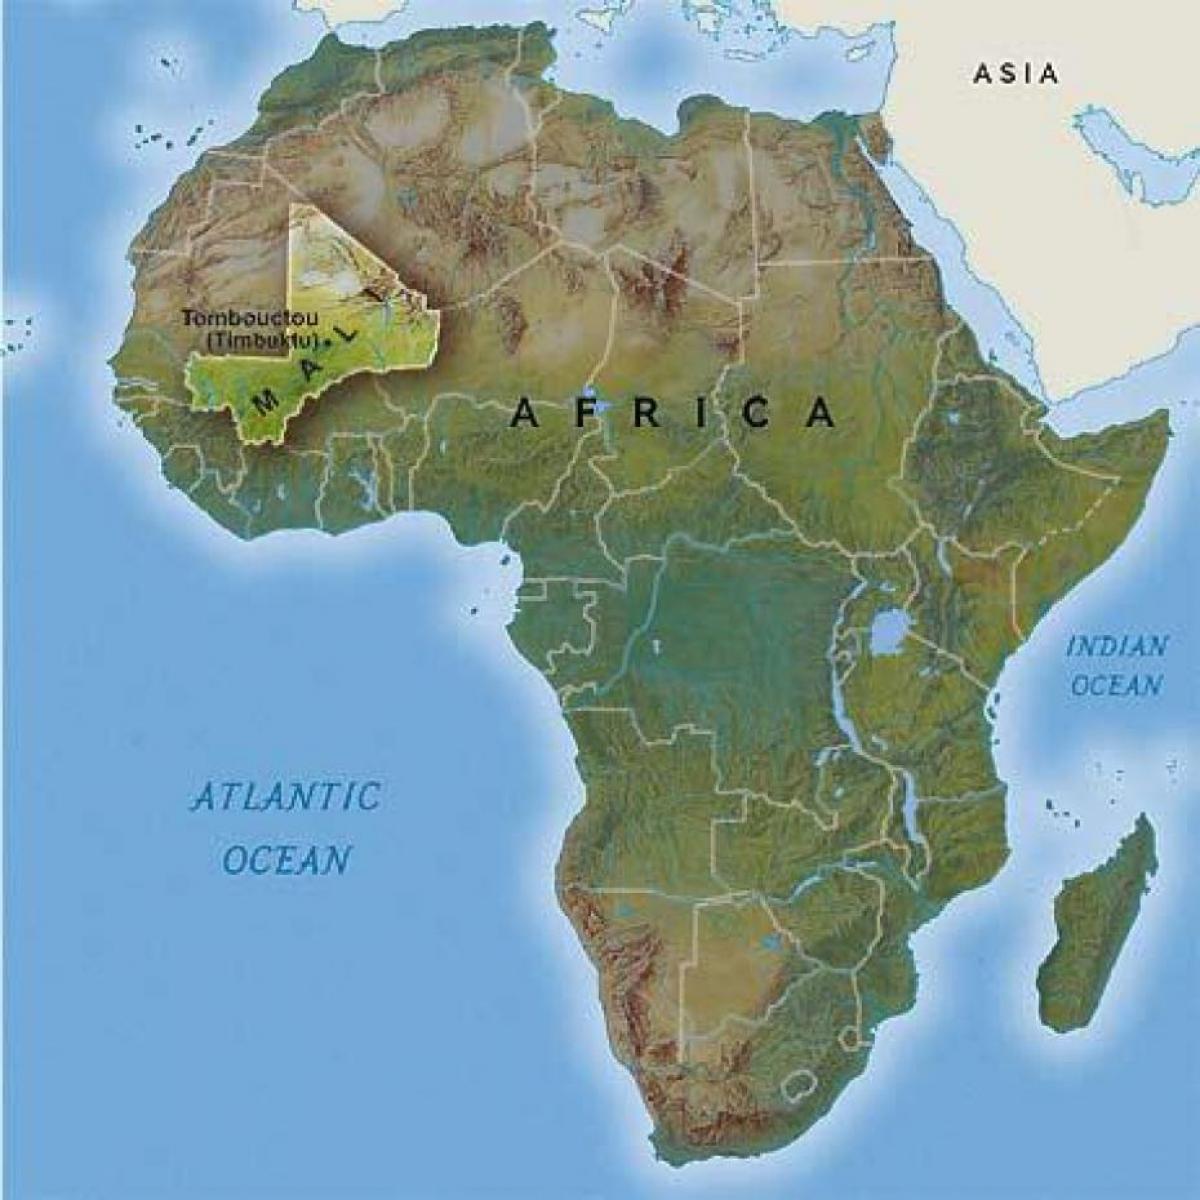 89427010 1256567617884374 1877632764052766720 n المحلل المتخصص "بريال سينج": أمام إفريقيا فرصة نادرة لاعادة تشكيل النظام الدولي